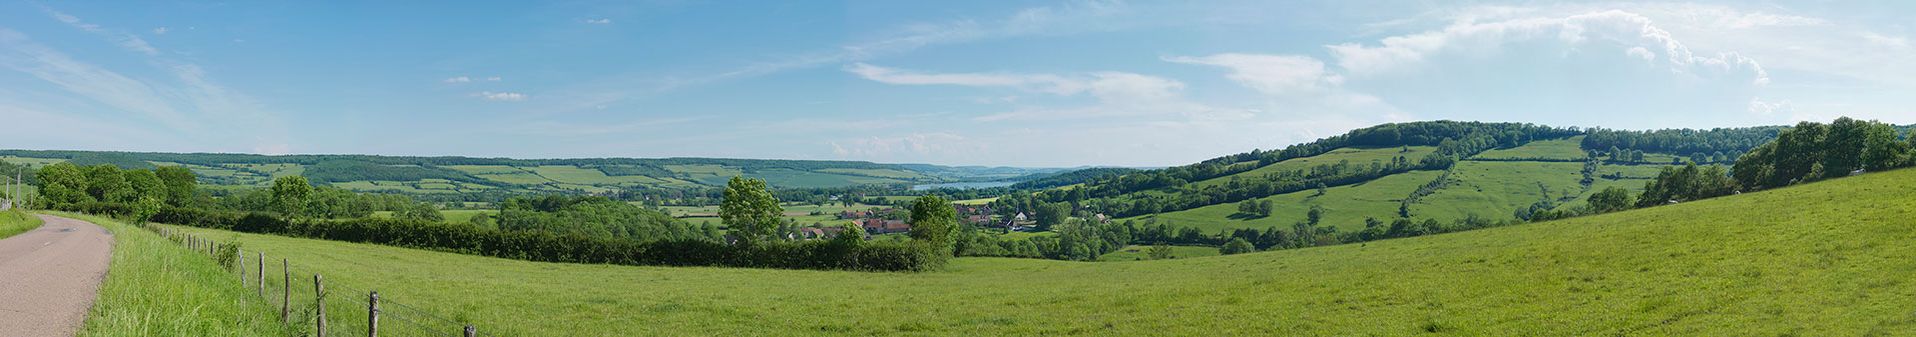 Panorama, pris au-dessus du village de Semarey, sur la vallée de Vandenesse-en-Auxois, où passe le canal de Bourgogne et où se trouve le réservoir de Panthier.